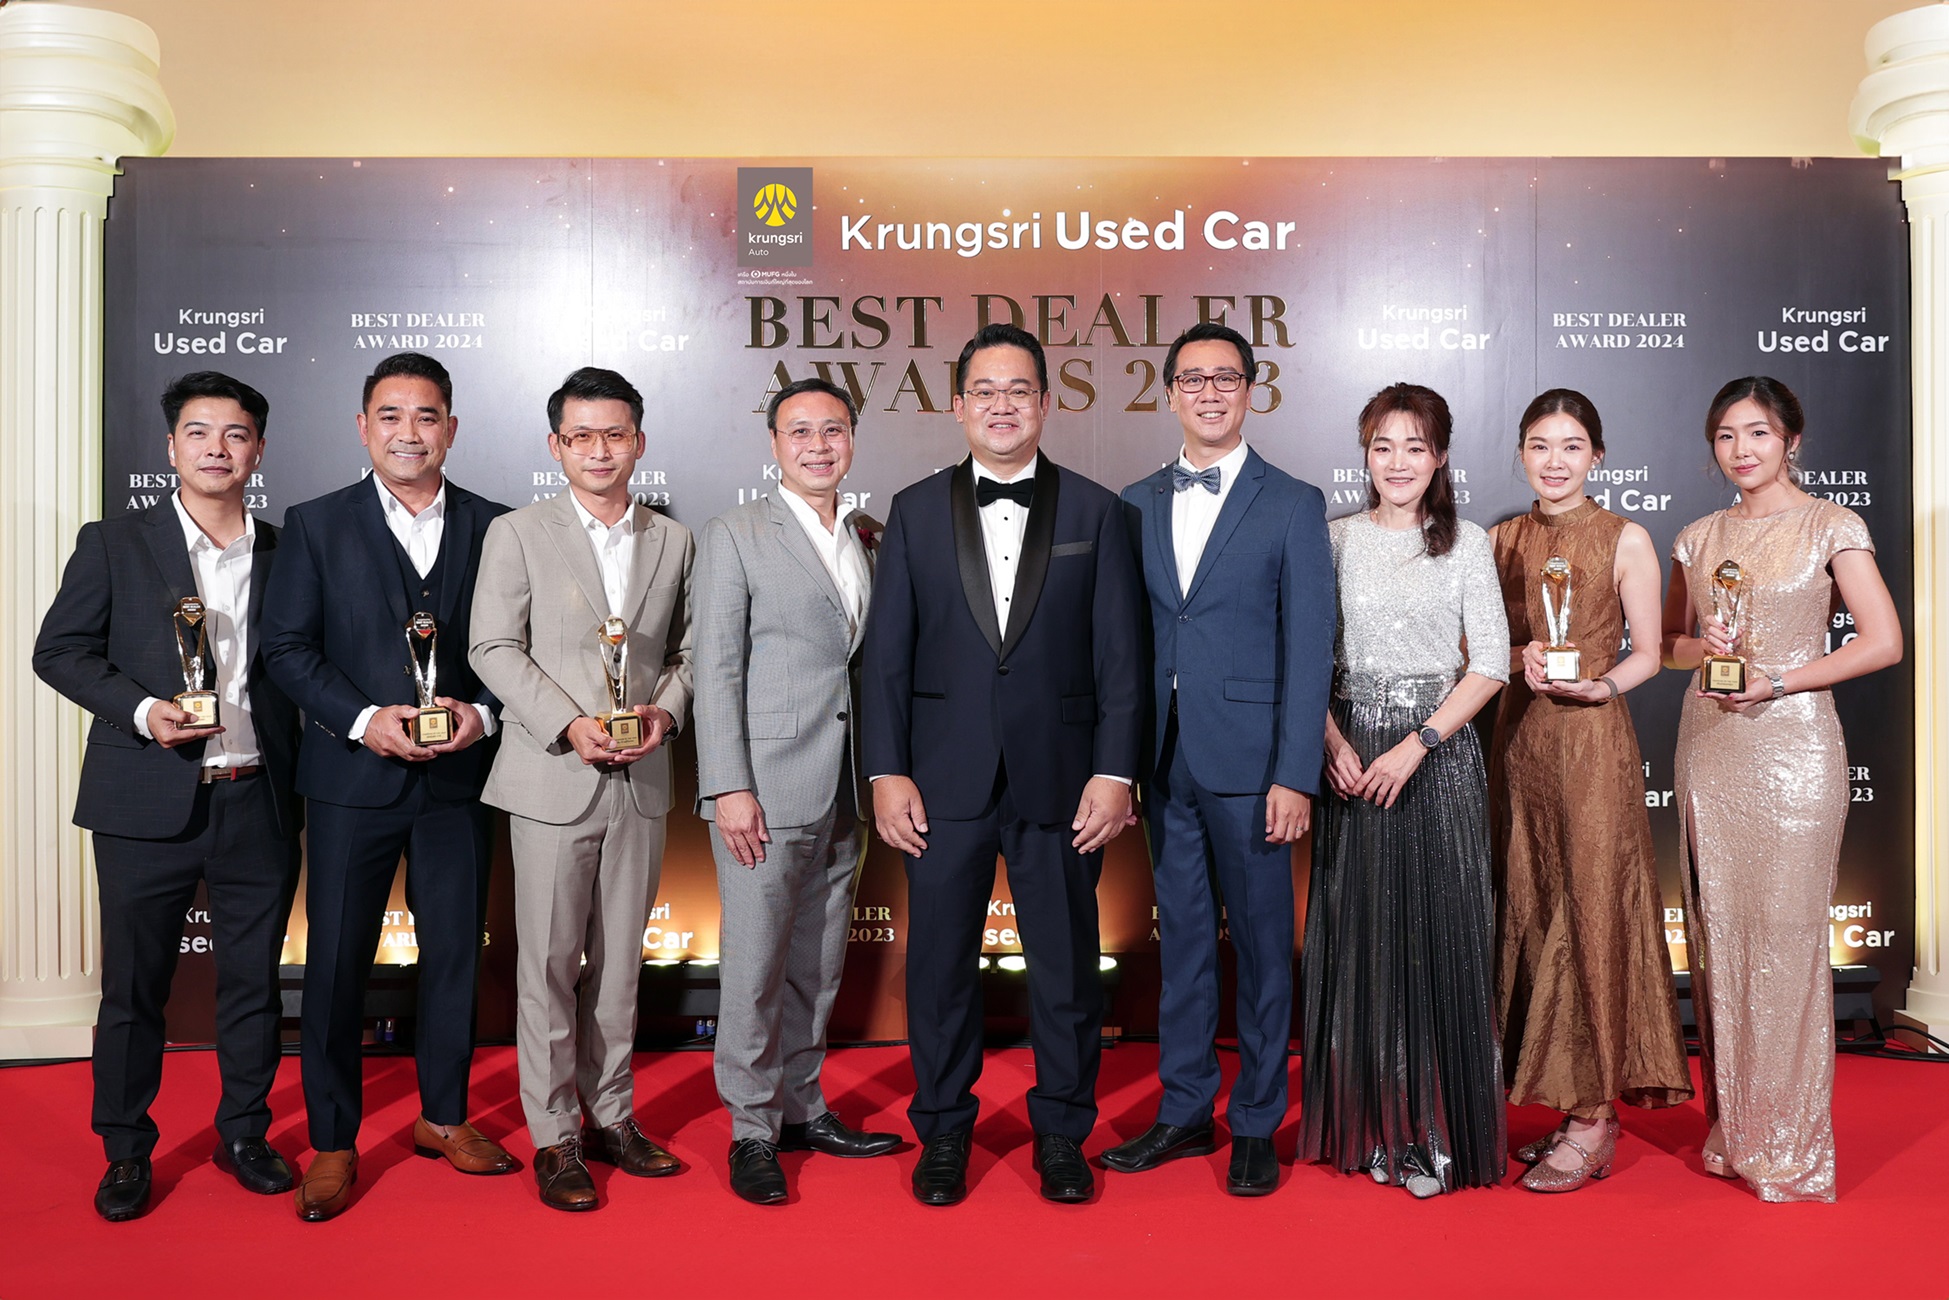 “กรุงศรี ออโต้” ประกาศรางวัล Krungsri Used Car Best Dealer Awards 2023 ฉลองความสำเร็จพันธมิตรรถยนต์ใช้แล้ว